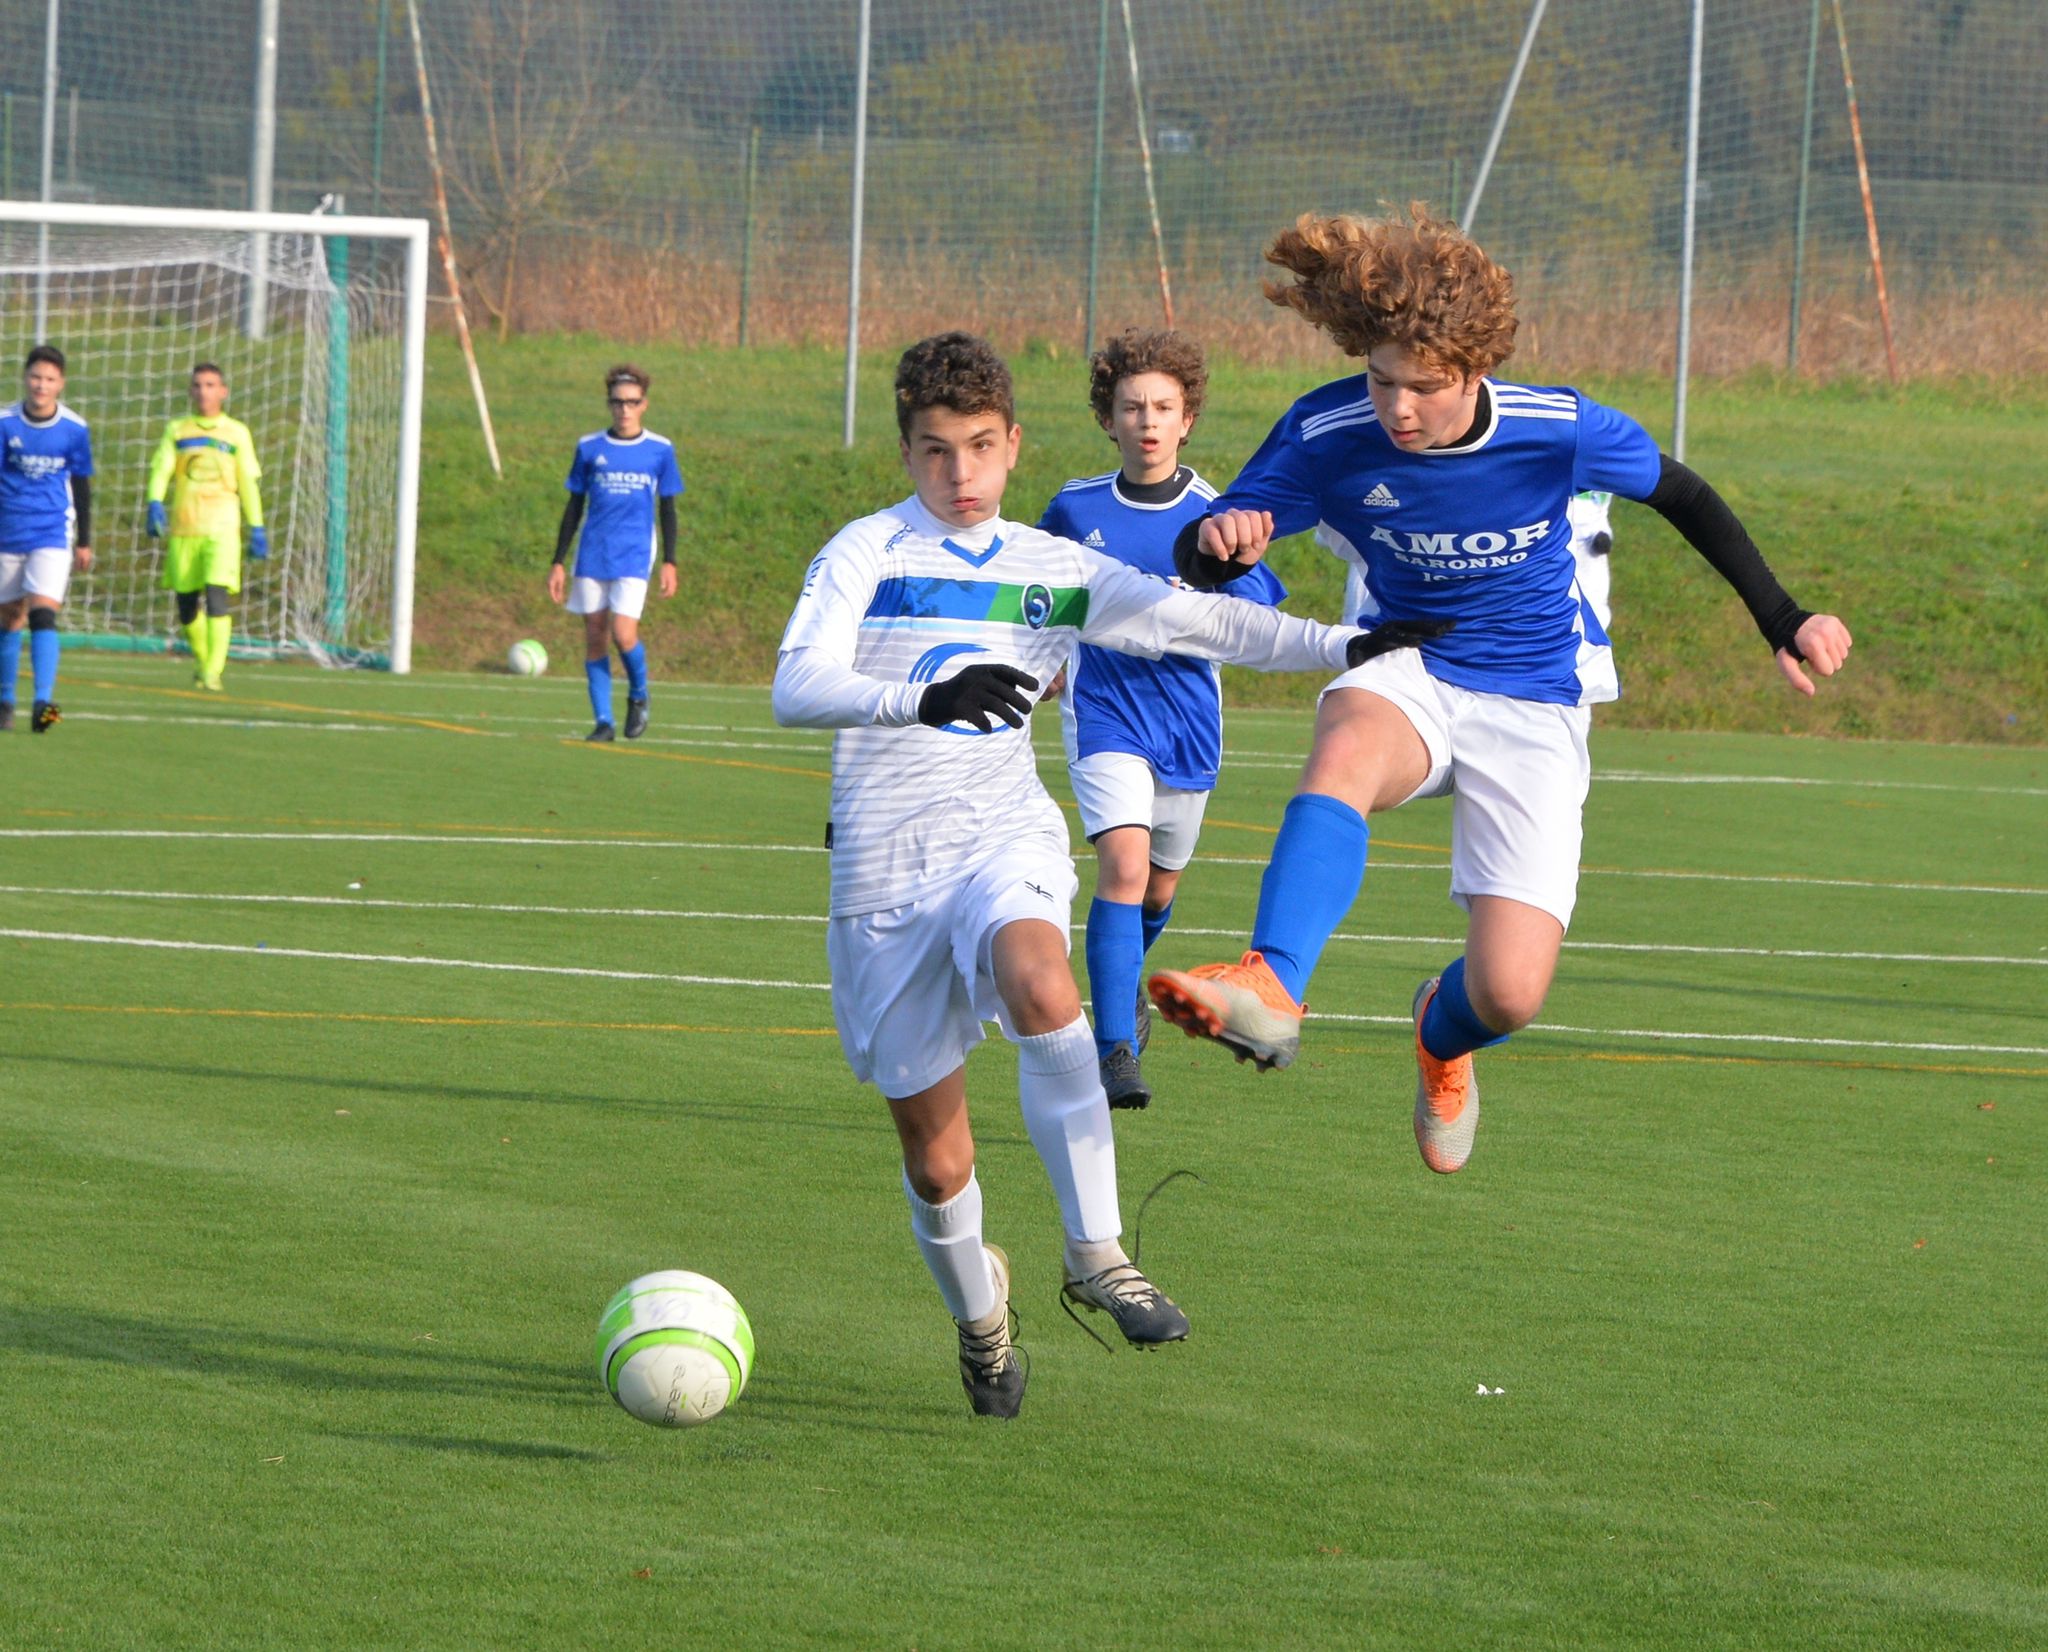 Calcio, a Saronno arriva la prima edizione del torneo Busnelli categoria Esordienti 2010